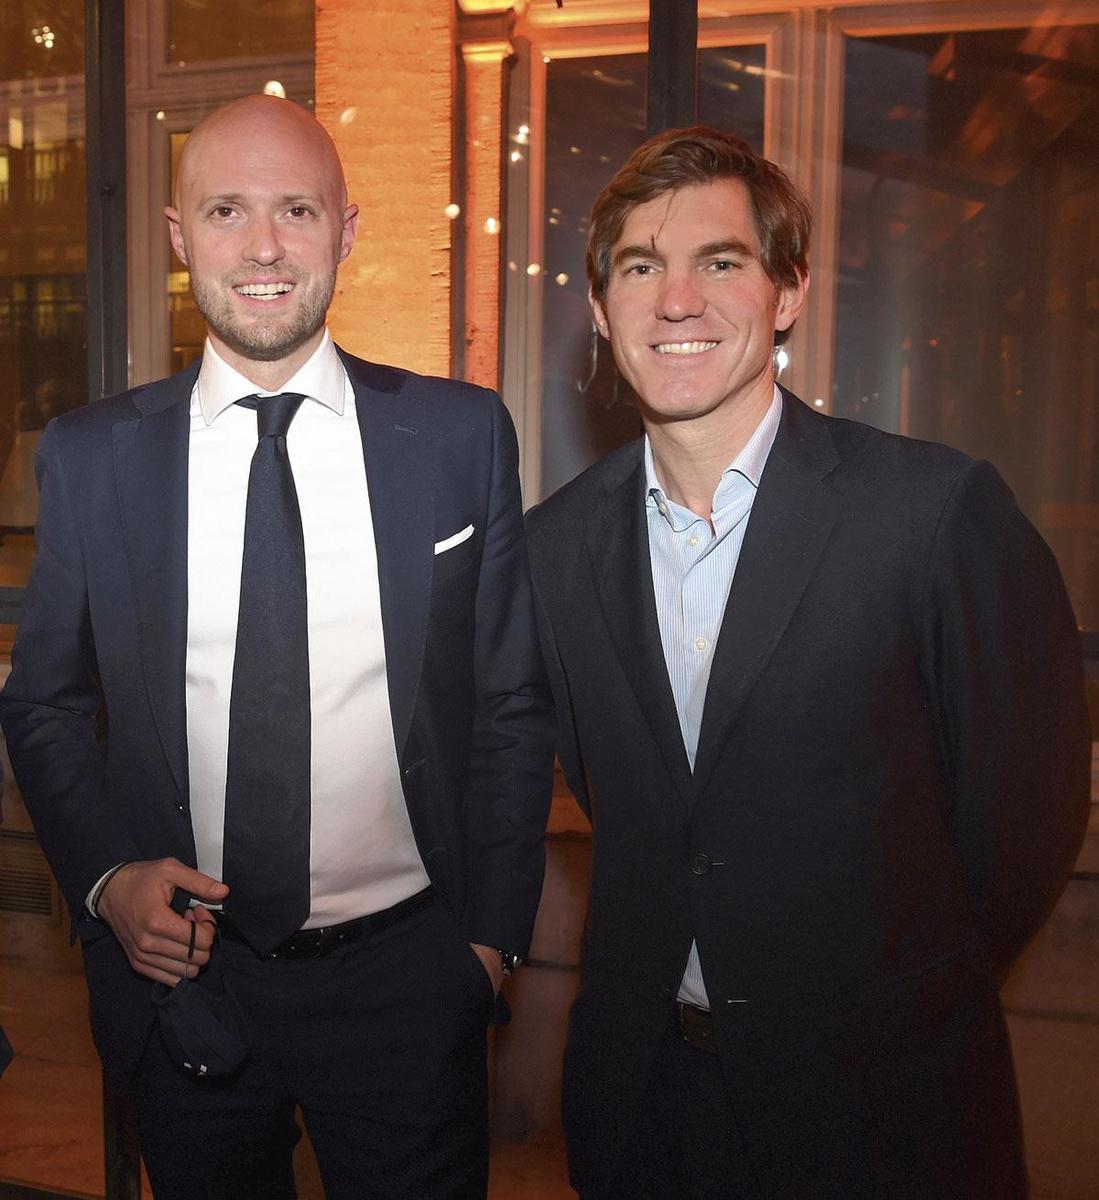 David Leisterh, président du MR bruxellois, et Sébastien Desclée de Maredsous, global client lead chez Publicis.